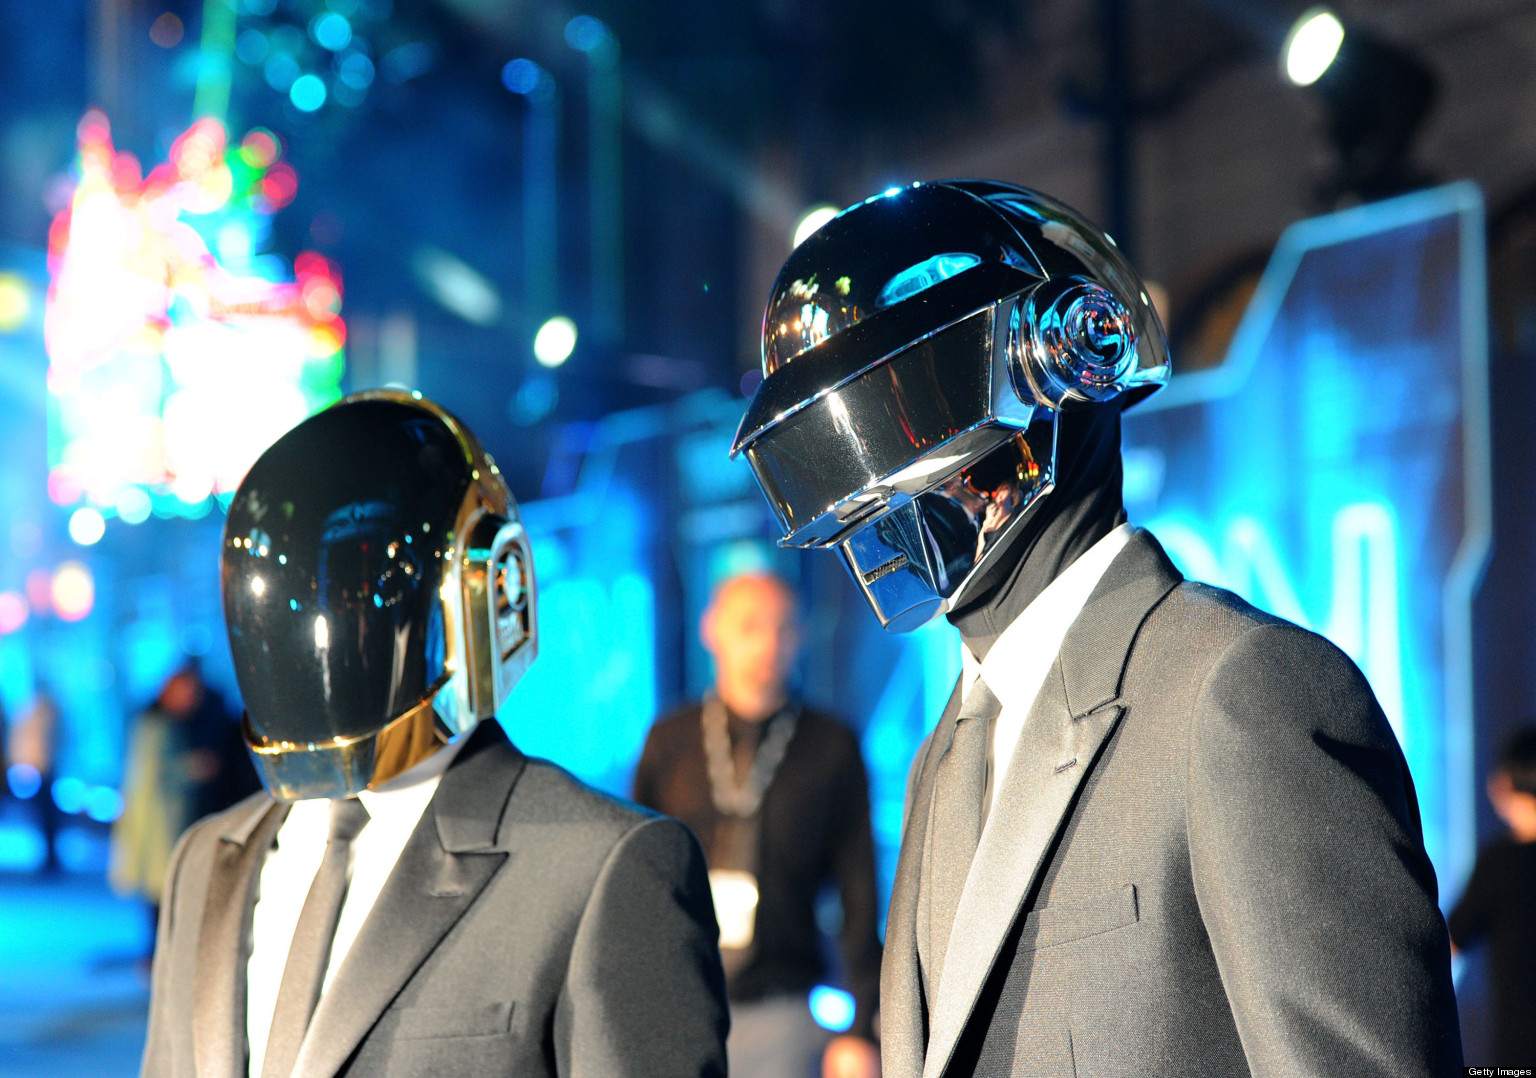 Daft Punk At Coachella? No Way, Says Rep